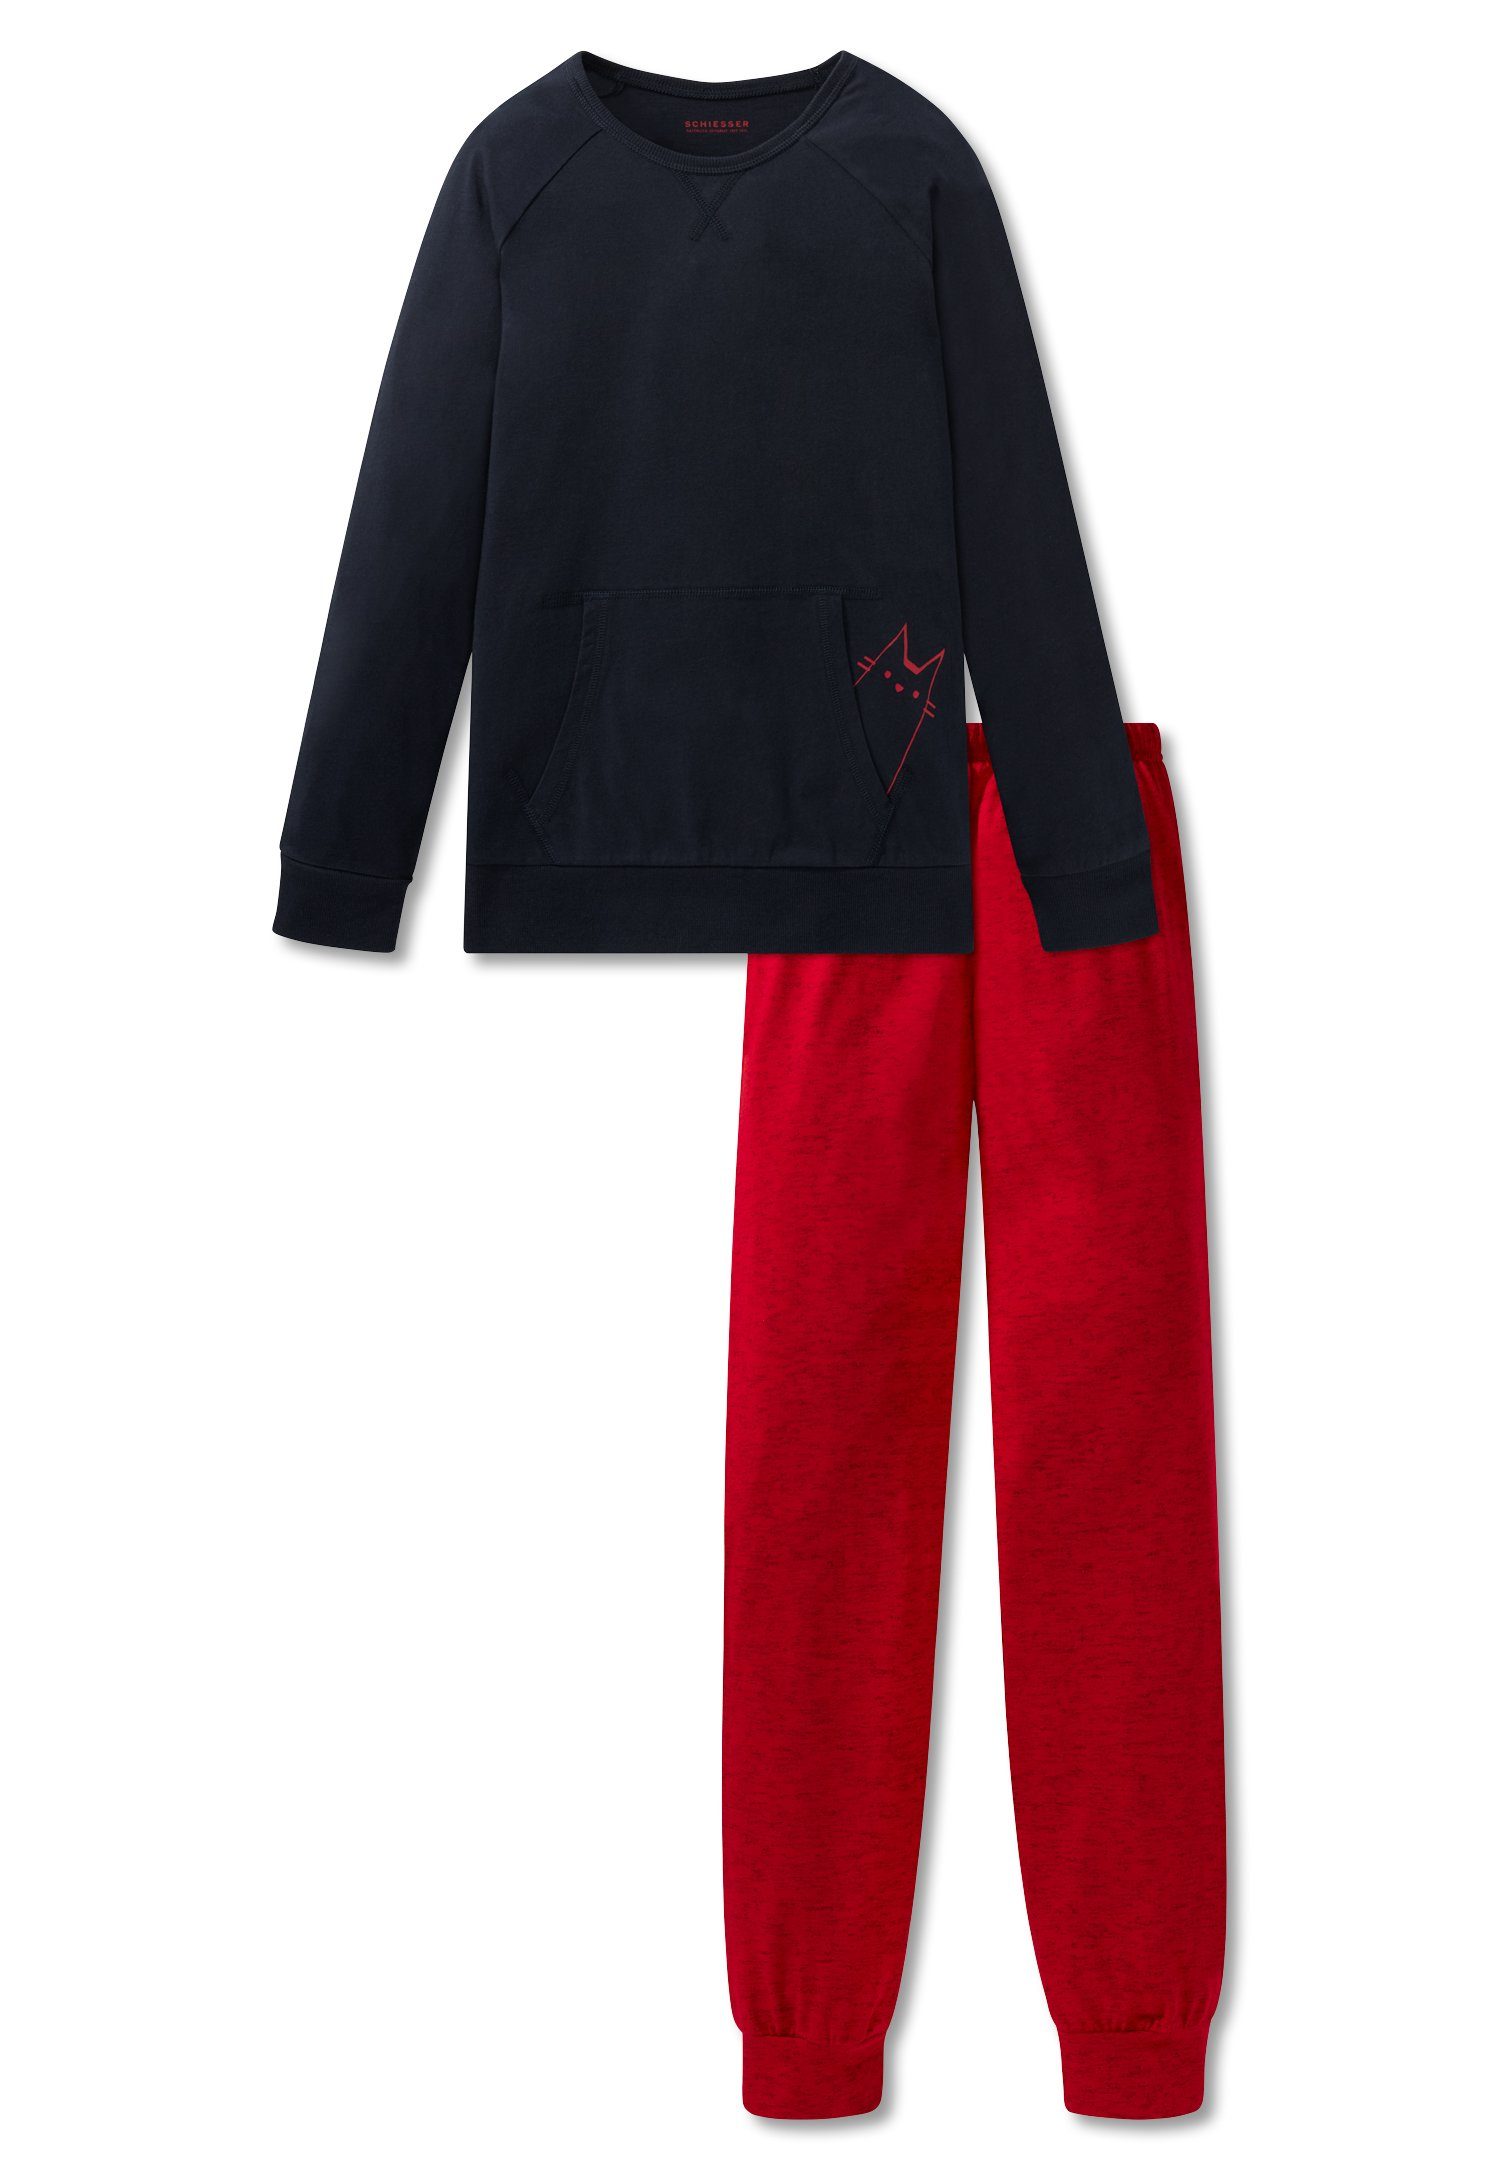 Red Baumwolle Schlafanzug 100% (Set, Set) Mädchen Schlafanzug Delight lang, Schiesser Jersey,